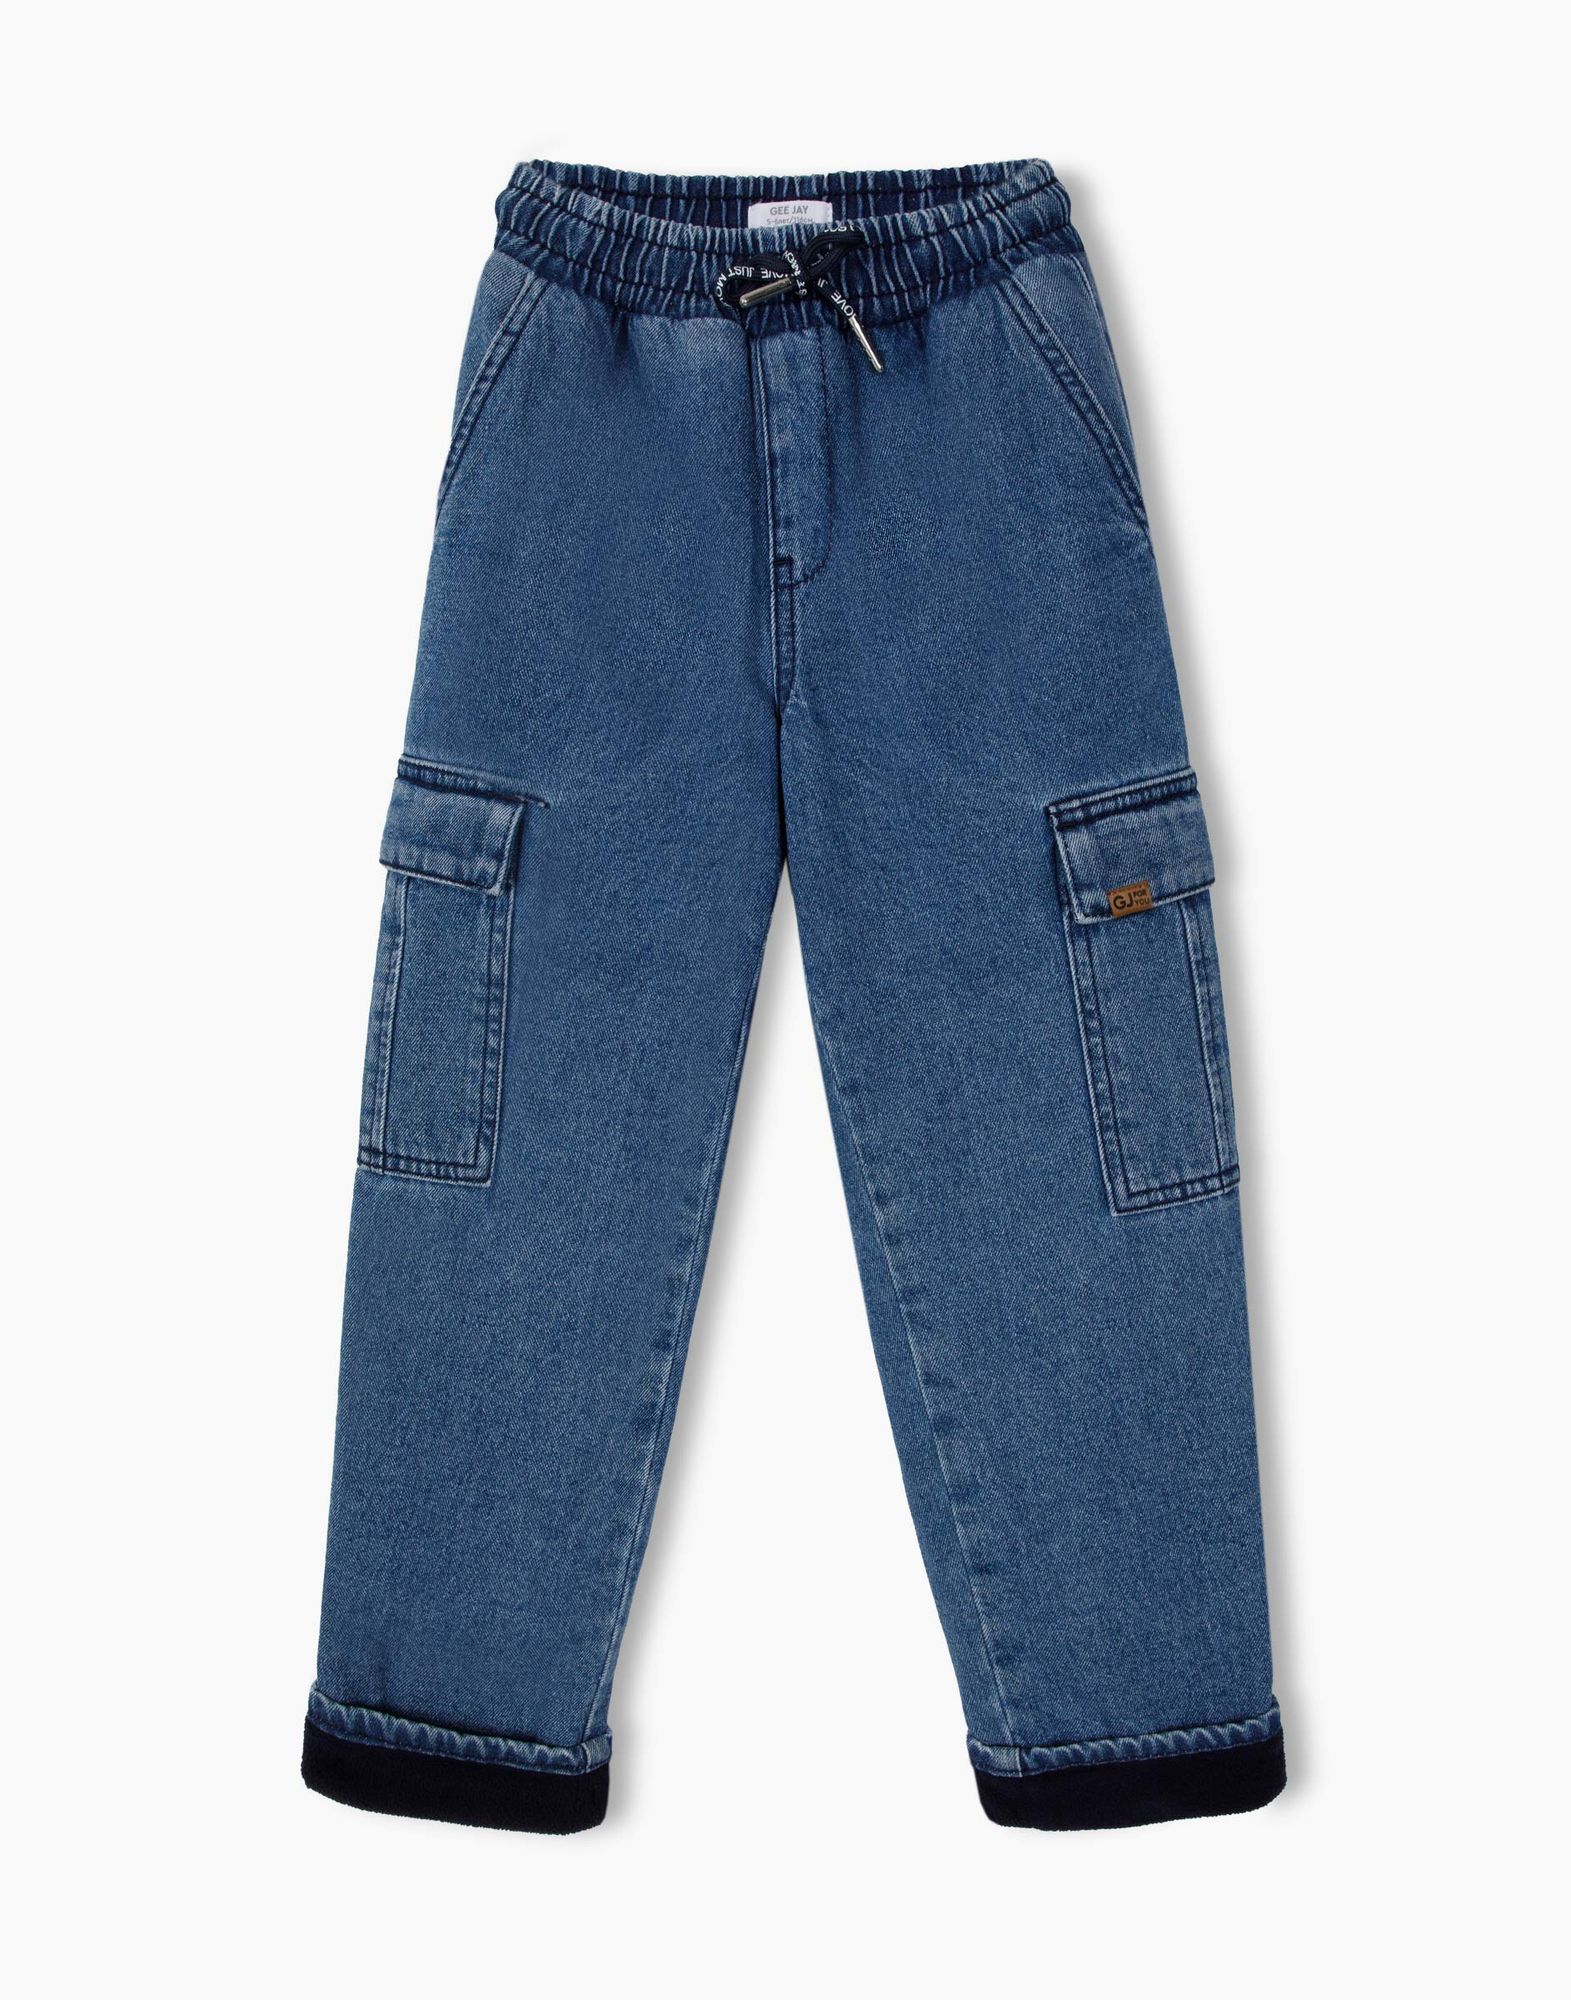 Утеплённые джинсы Cargo для мальчика-1